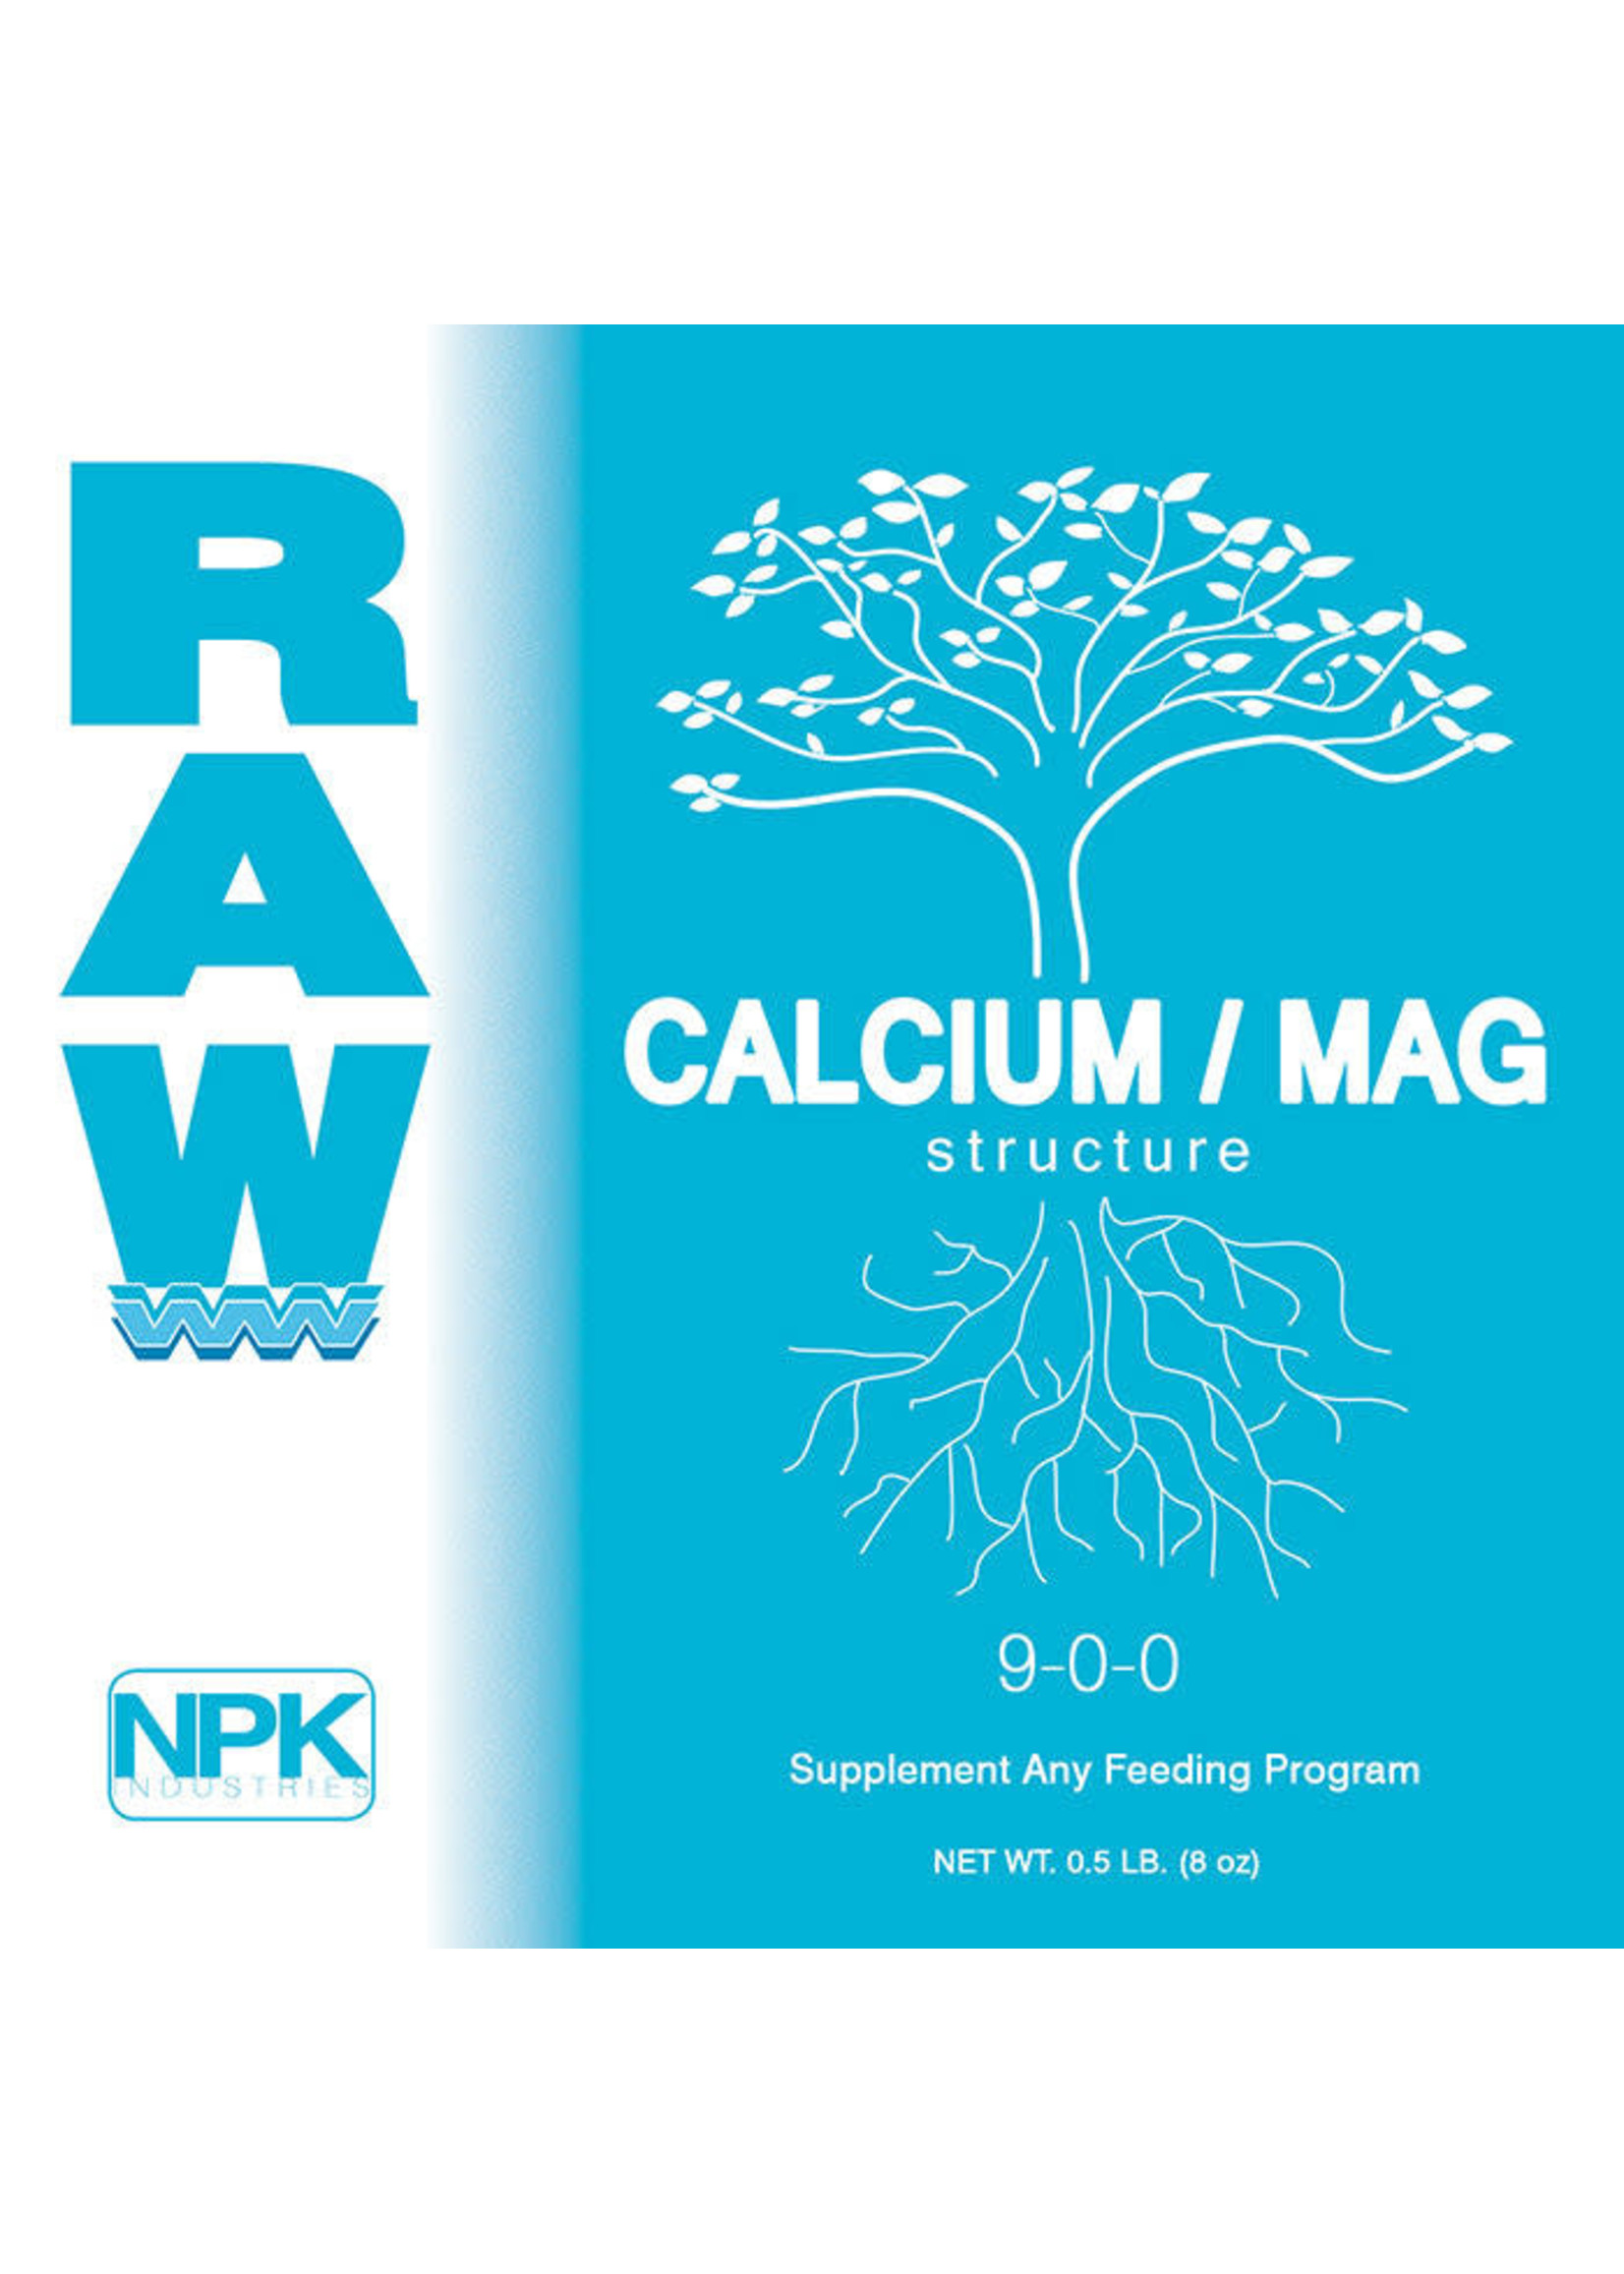 NPK Raw Calcium/ Mag